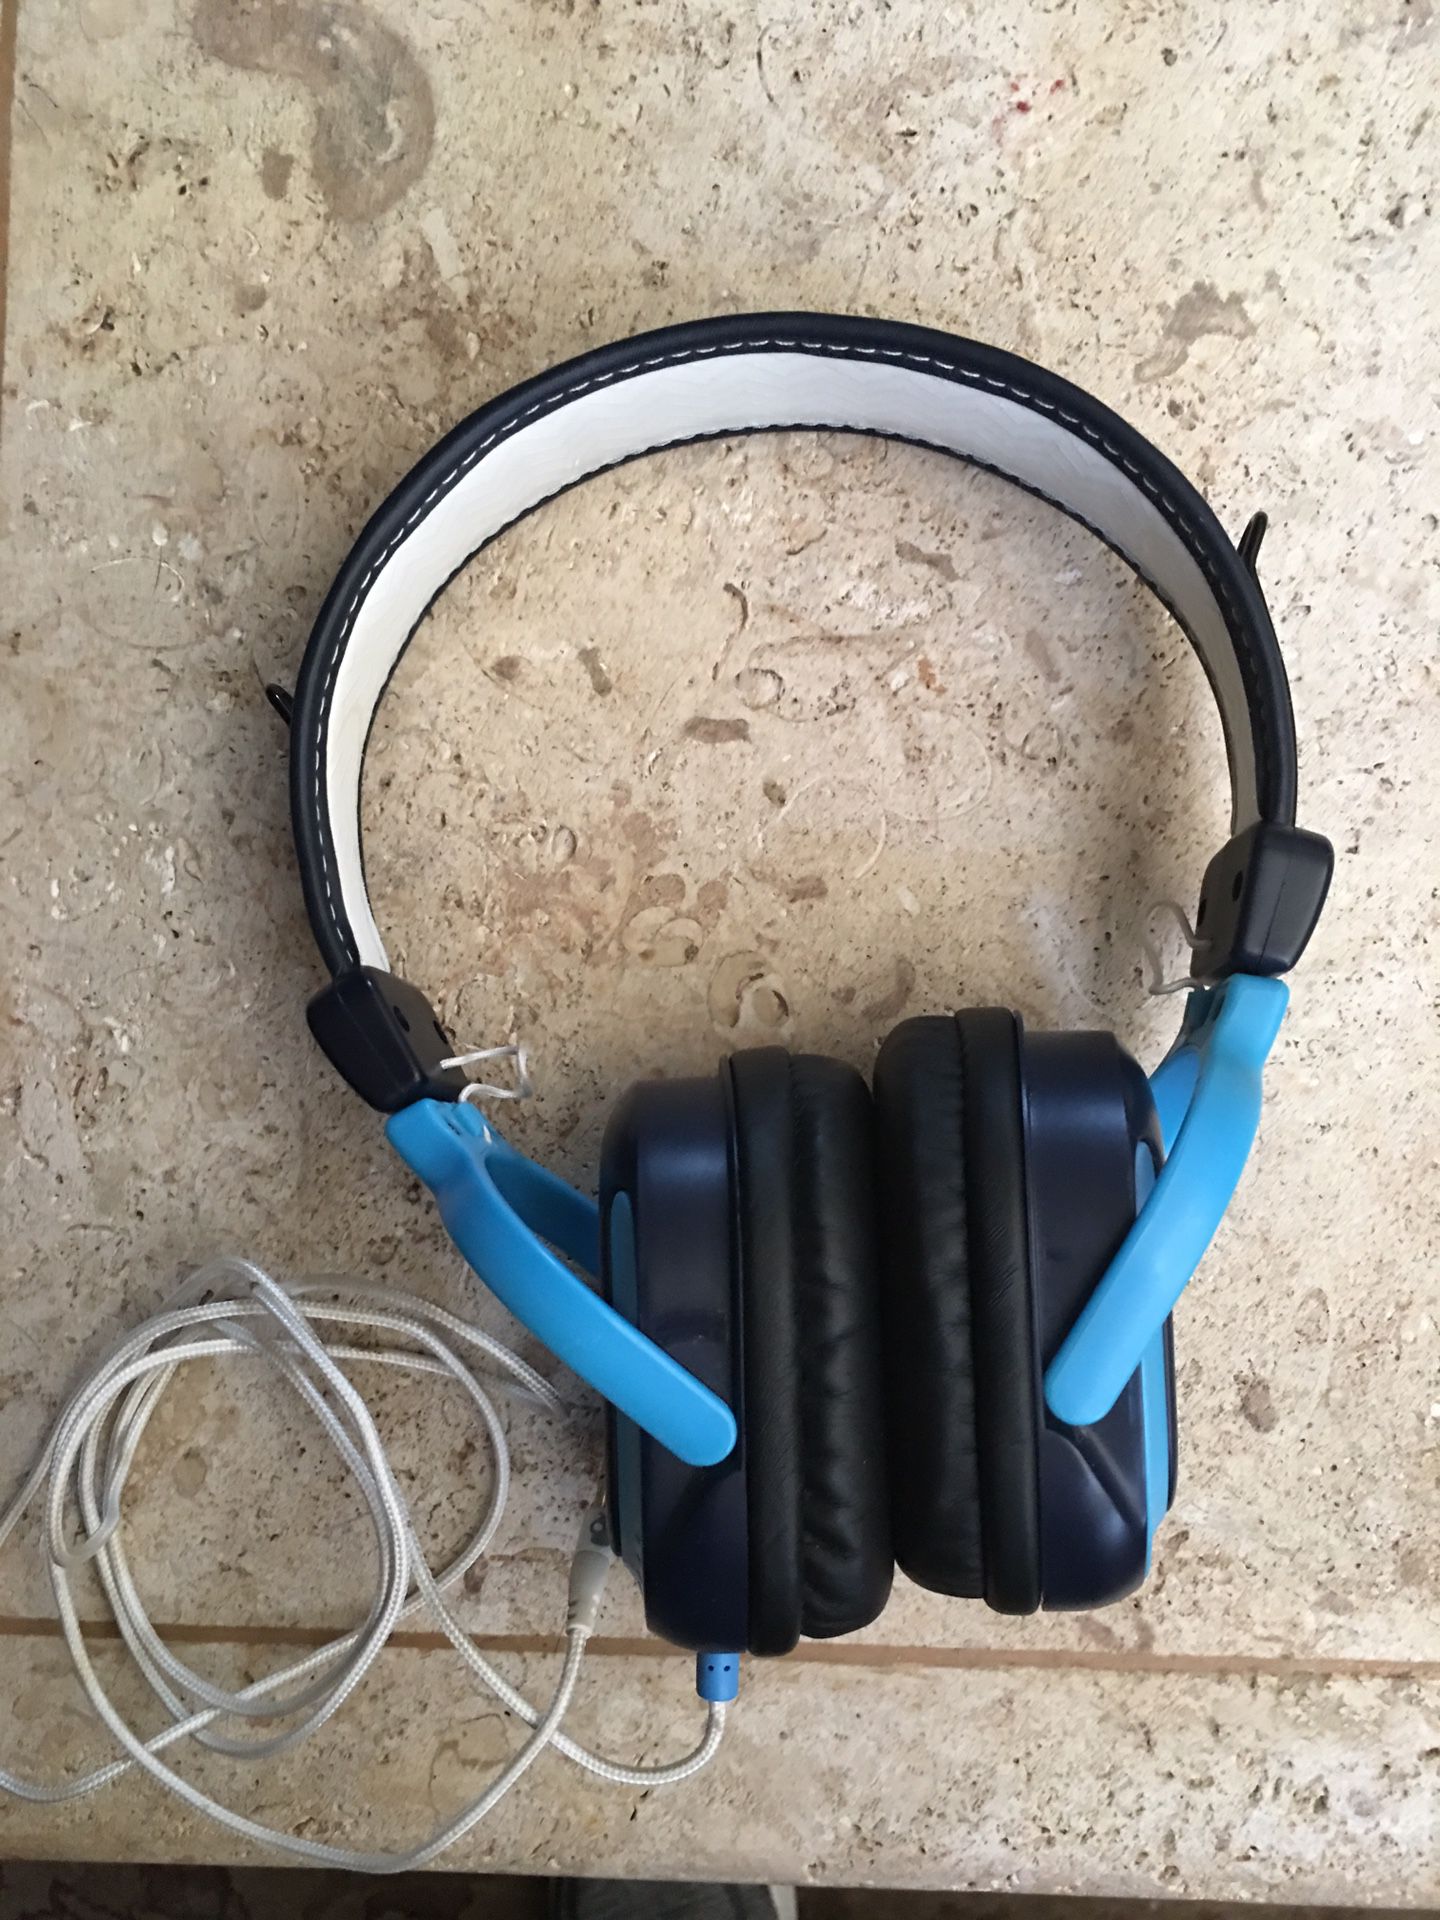 Skullcandy wired headphones